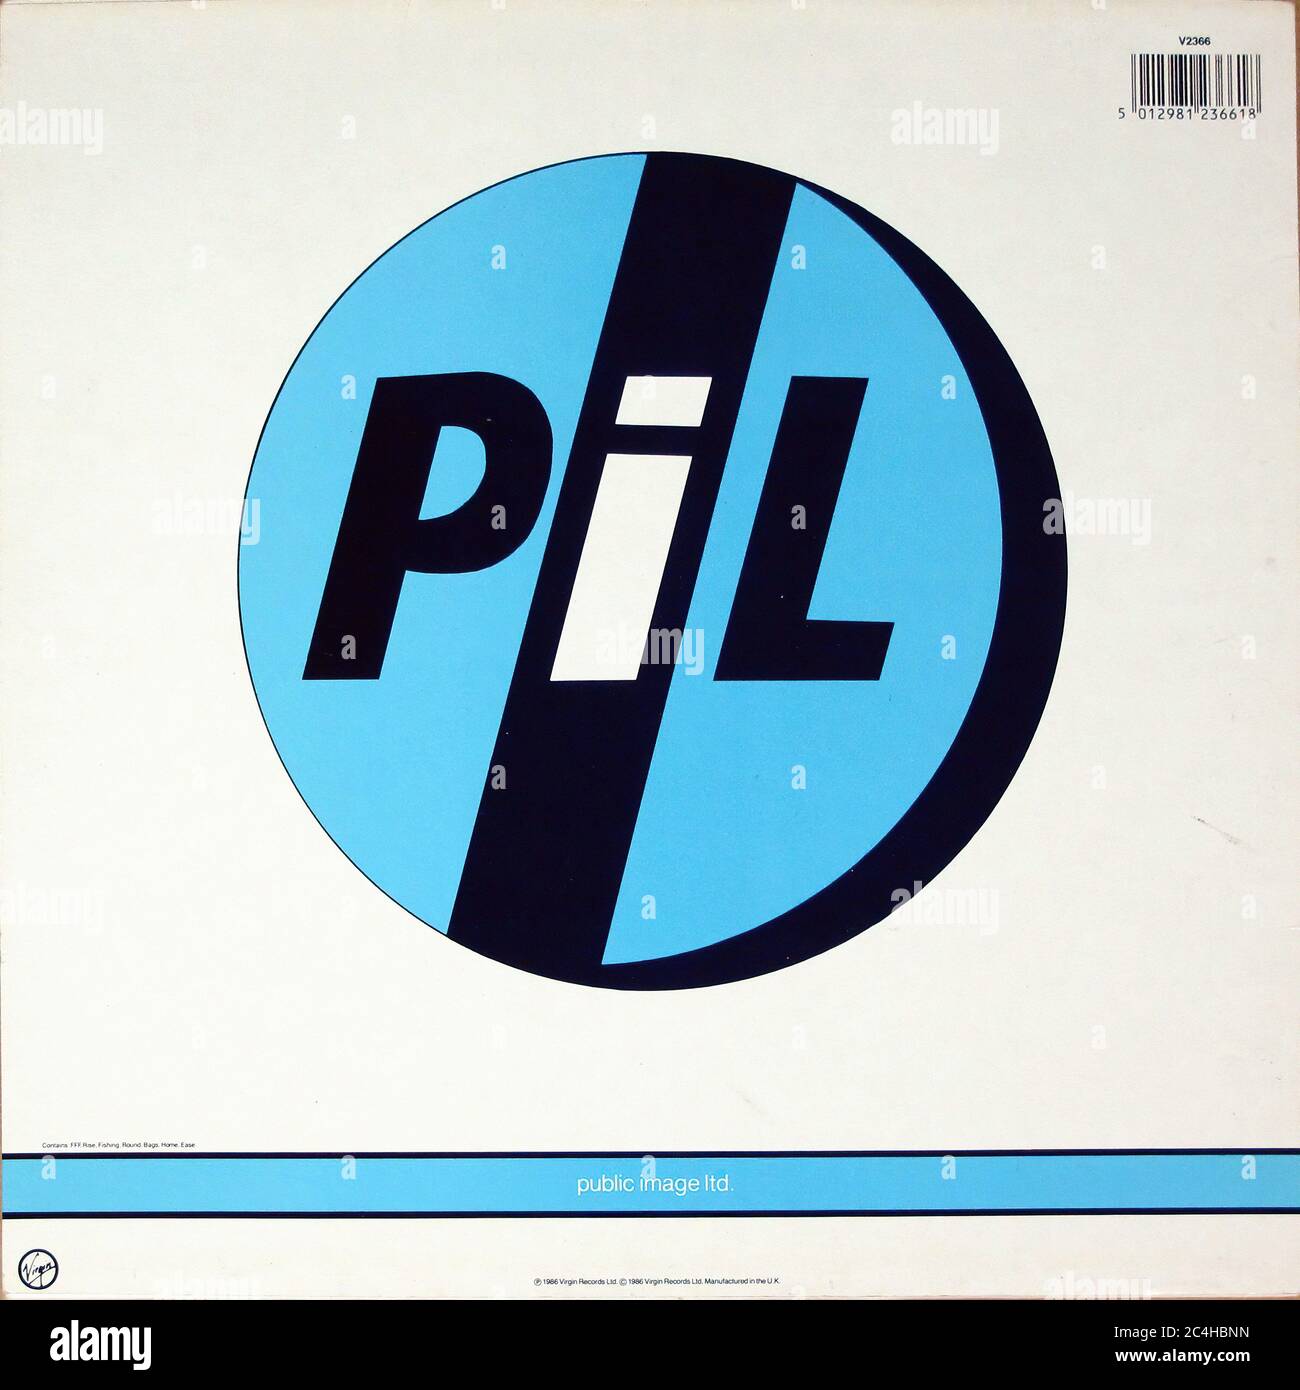 Public Image Ltd Album 12'' LP Vinyl - PIL Vintage Record Cover 02  Fotografía de stock - Alamy